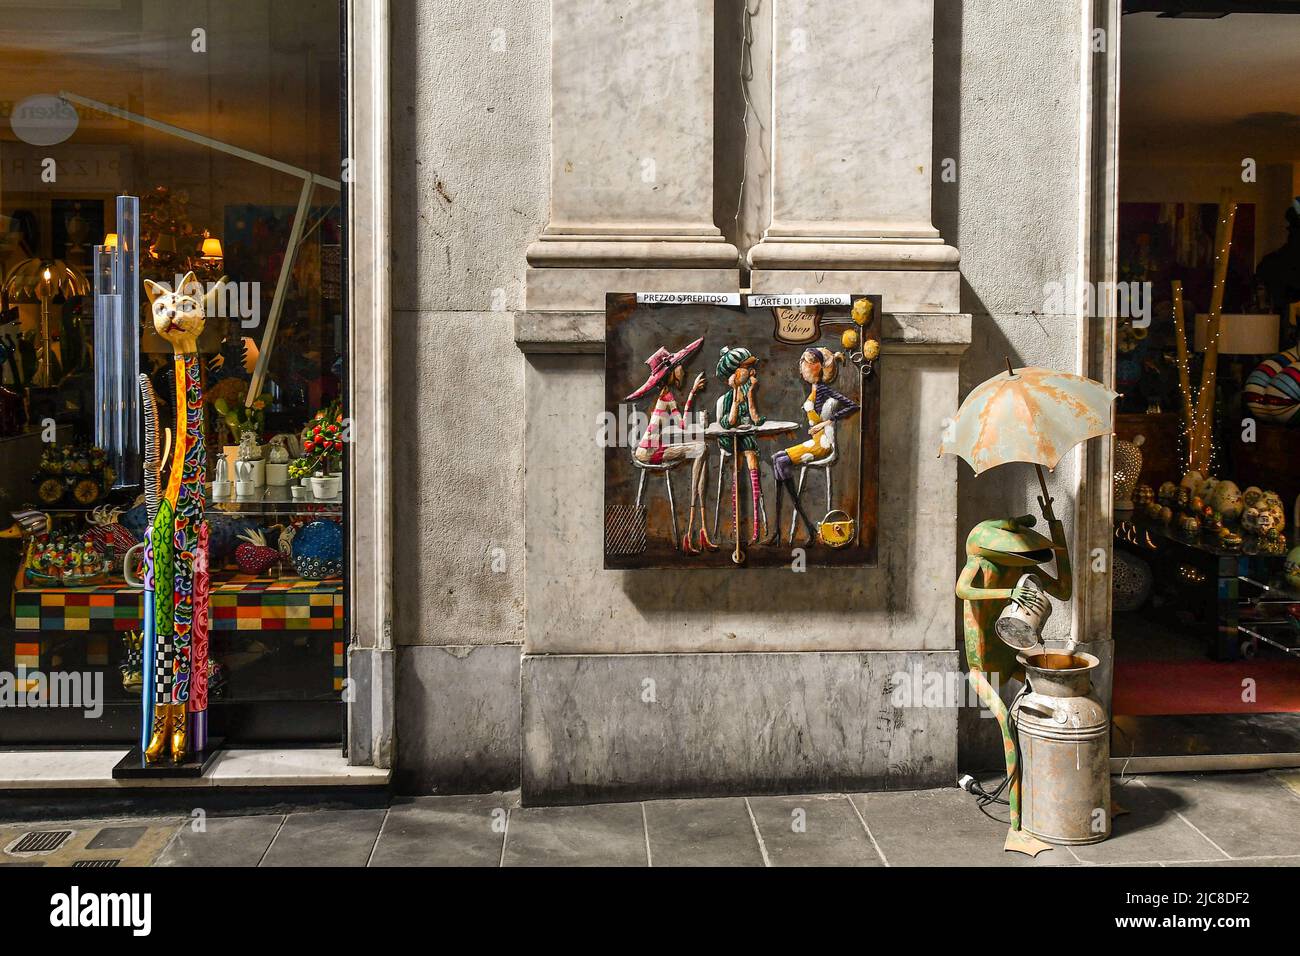 Exterior de una tienda de regalos con objetos coloridos expuestos en los escaparates y en la acera de la Galleria Giuseppe Mazzini, Génova, Liguria, Italia Foto de stock